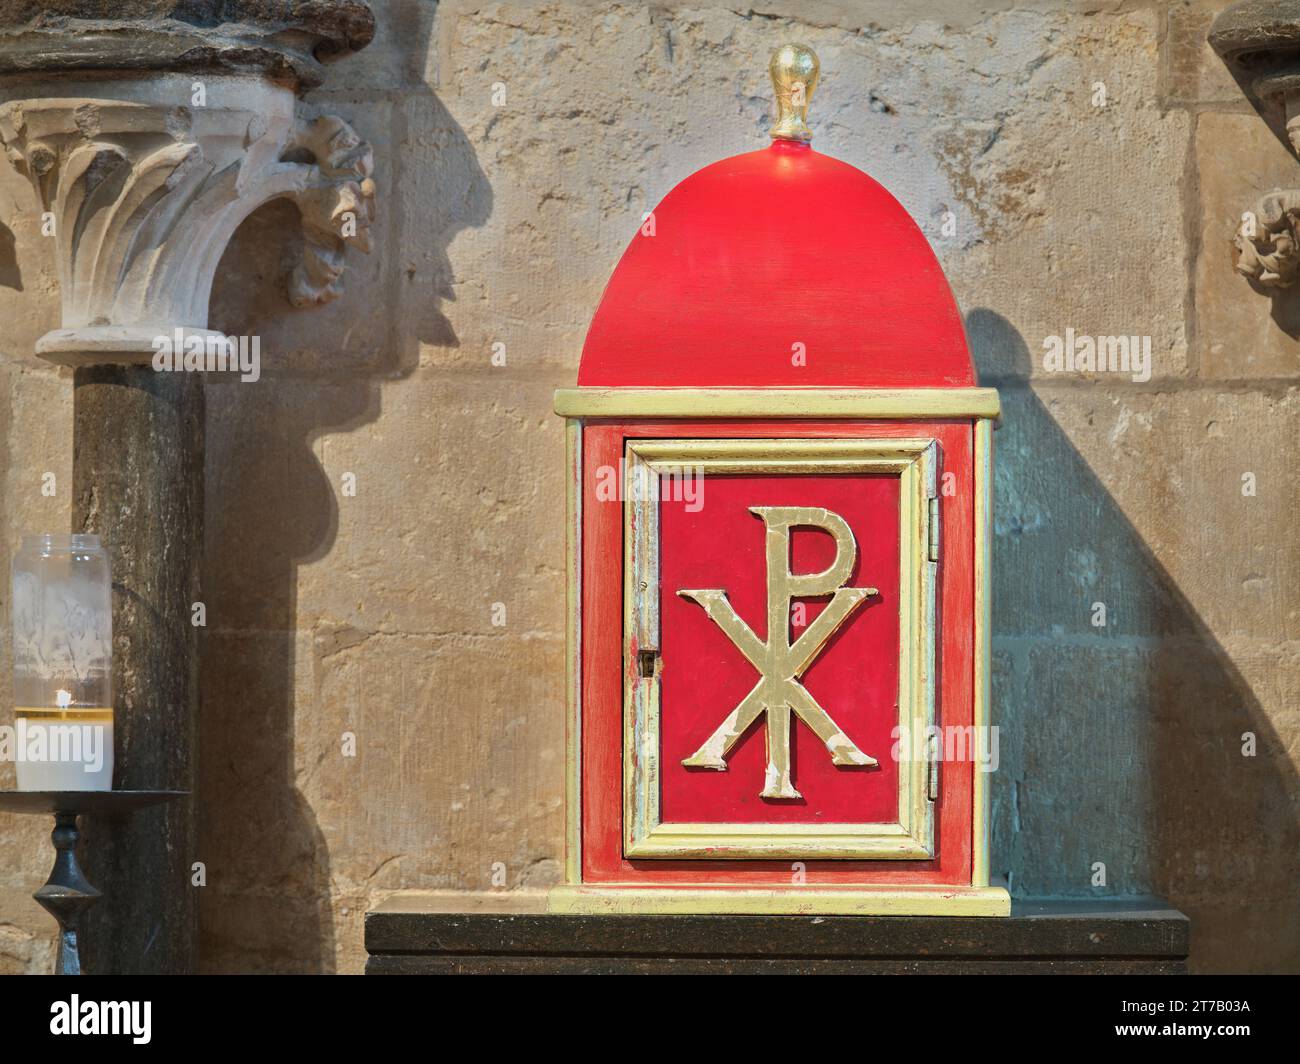 Tabernacolo rosso (con il monogramma chi-rho per Gesù Cristo) su un muro della cappella dell'estremità orientale nella cattedrale cristiana medievale di Lincoln, Inghilterra. Foto Stock